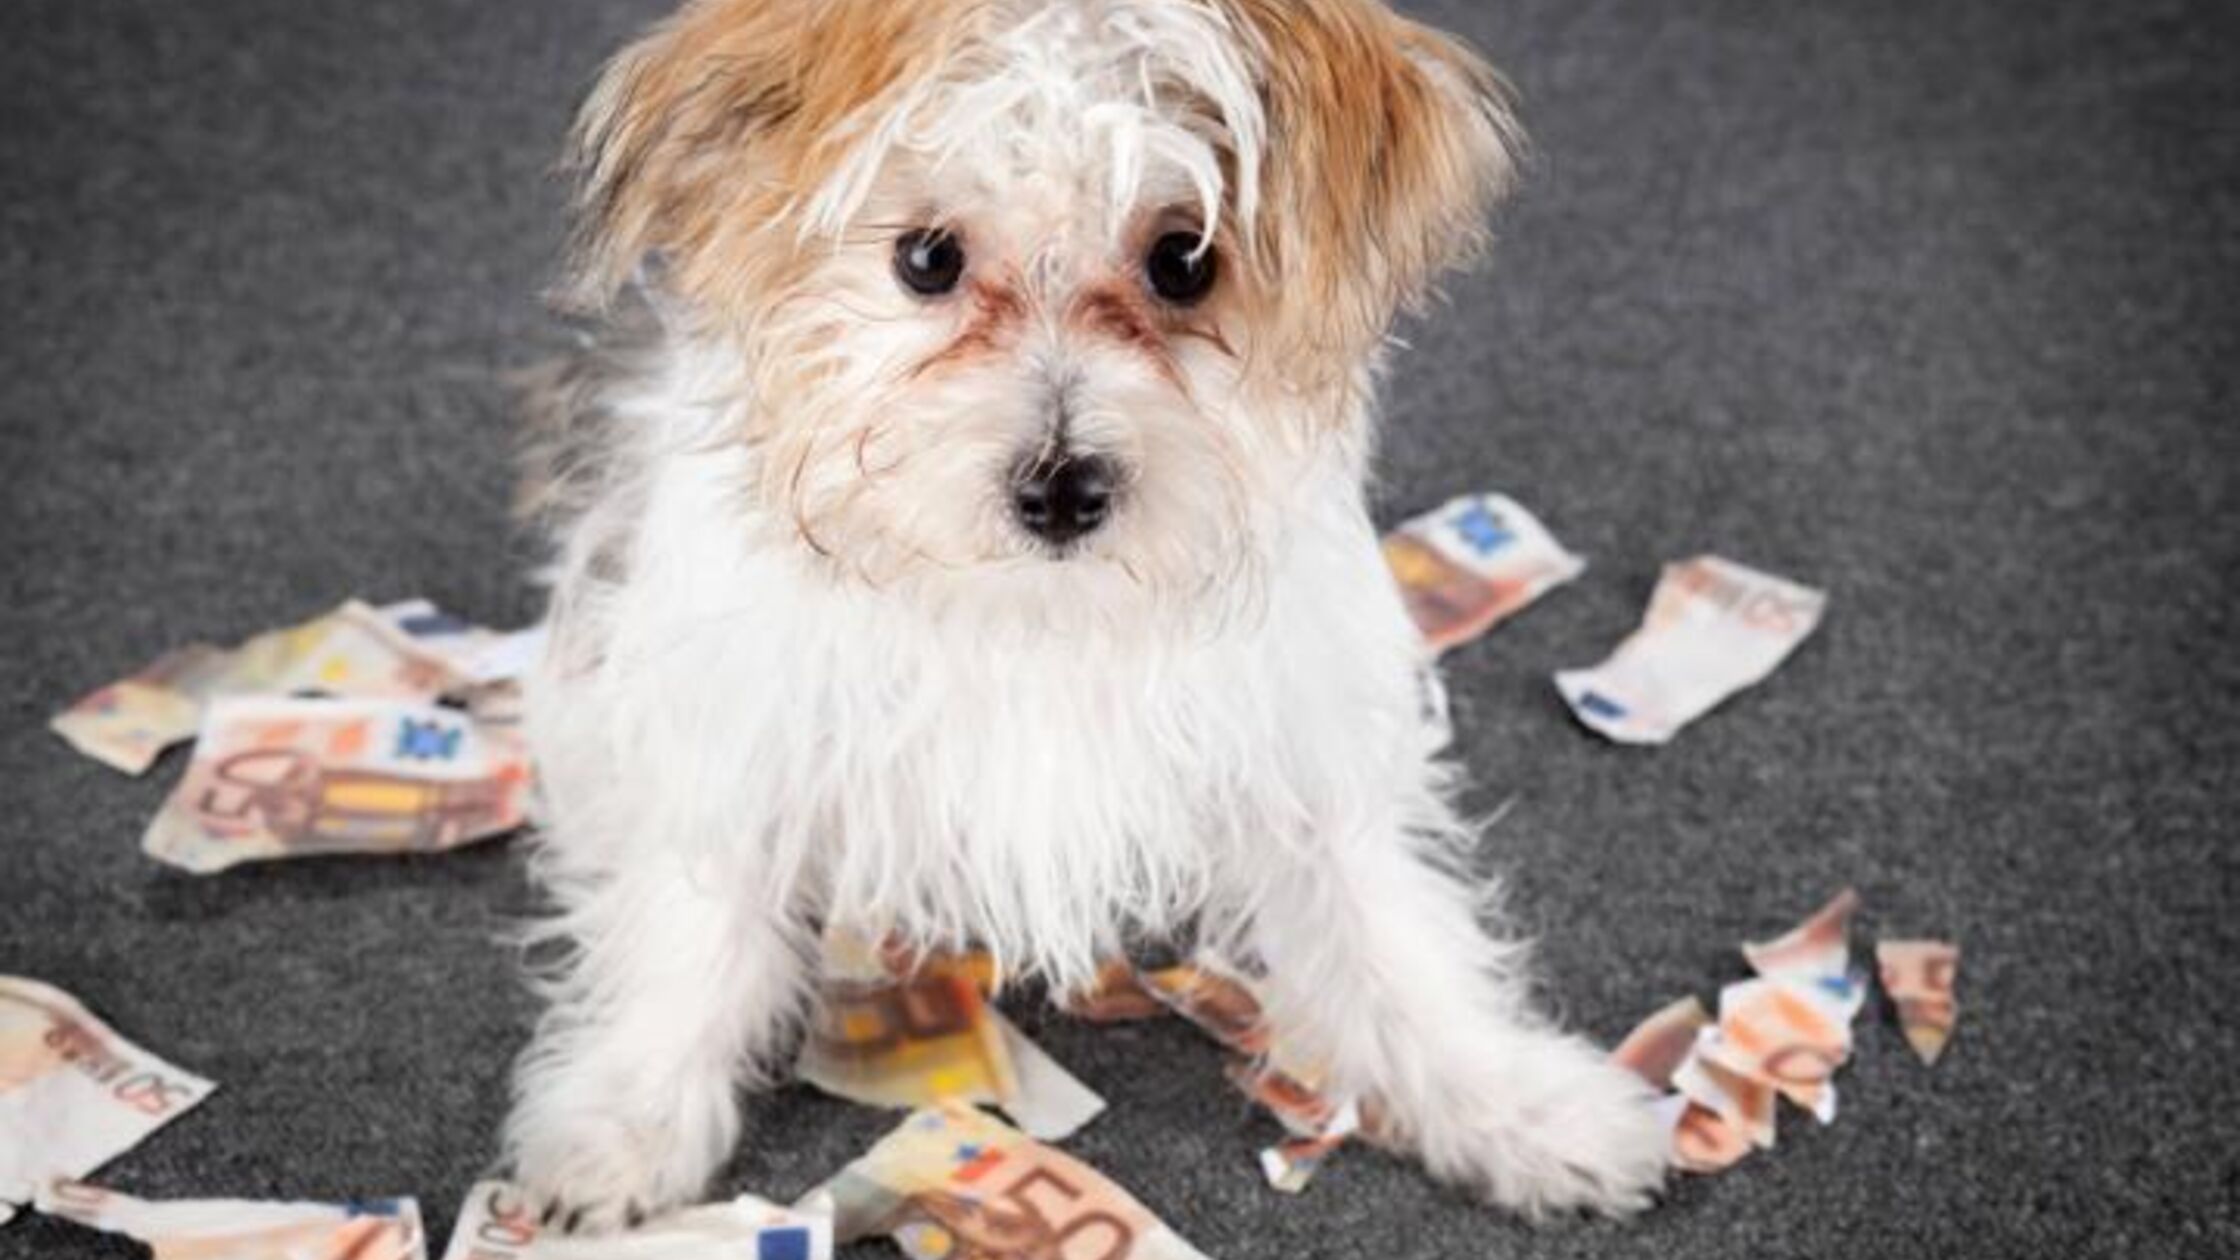 Hundewelpe sitzt zwischen zerknüllten und zerrissenen Euroscheinen